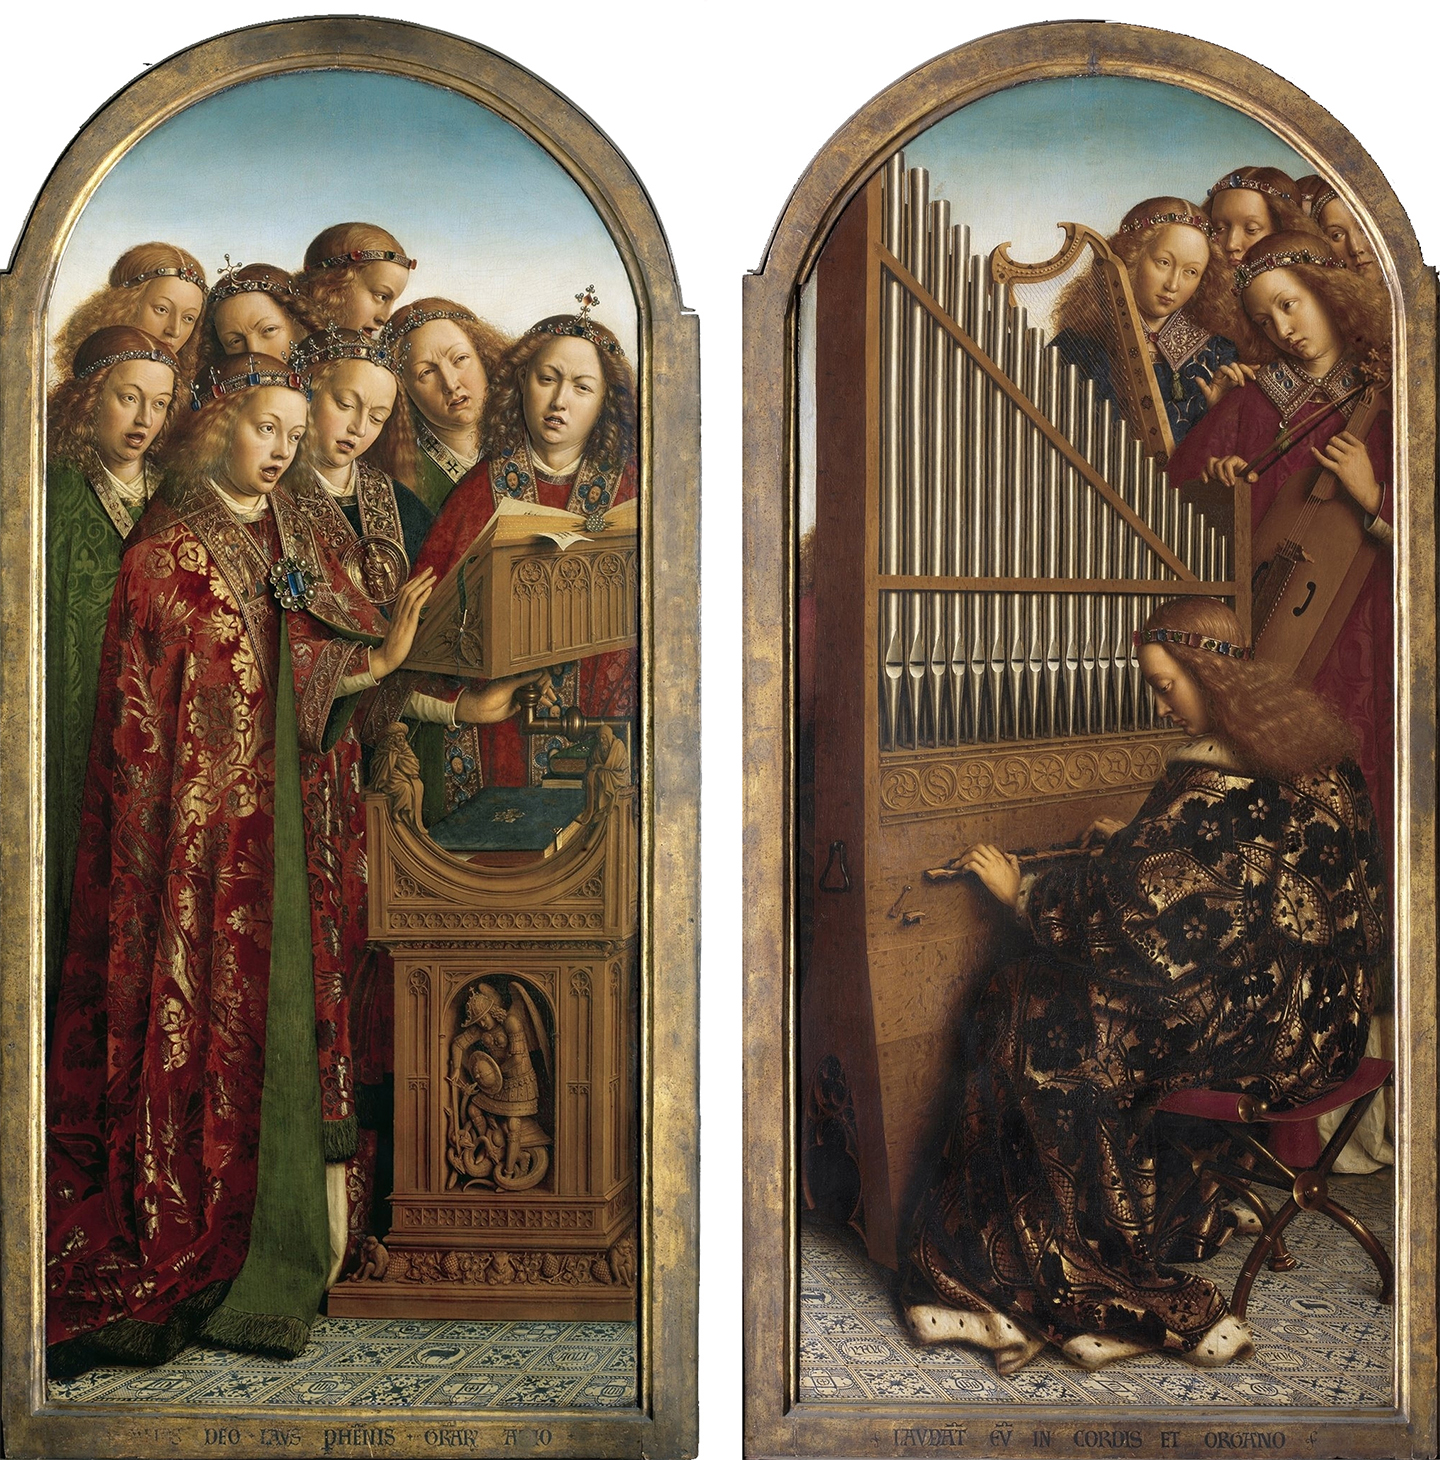 Chi tiết phần mô tả các thiên thần ở tấm ghép bên trái và bên phải trong bức đa liên họa “Ghent Altarpiece” của hai anh em họa sĩ Hubert và Jan van Eyck, năm 1432. Nhà thờ chính tòa Thánh Bavo, thành phố Ghent, Bỉ. (Ảnh: Tài sản công)